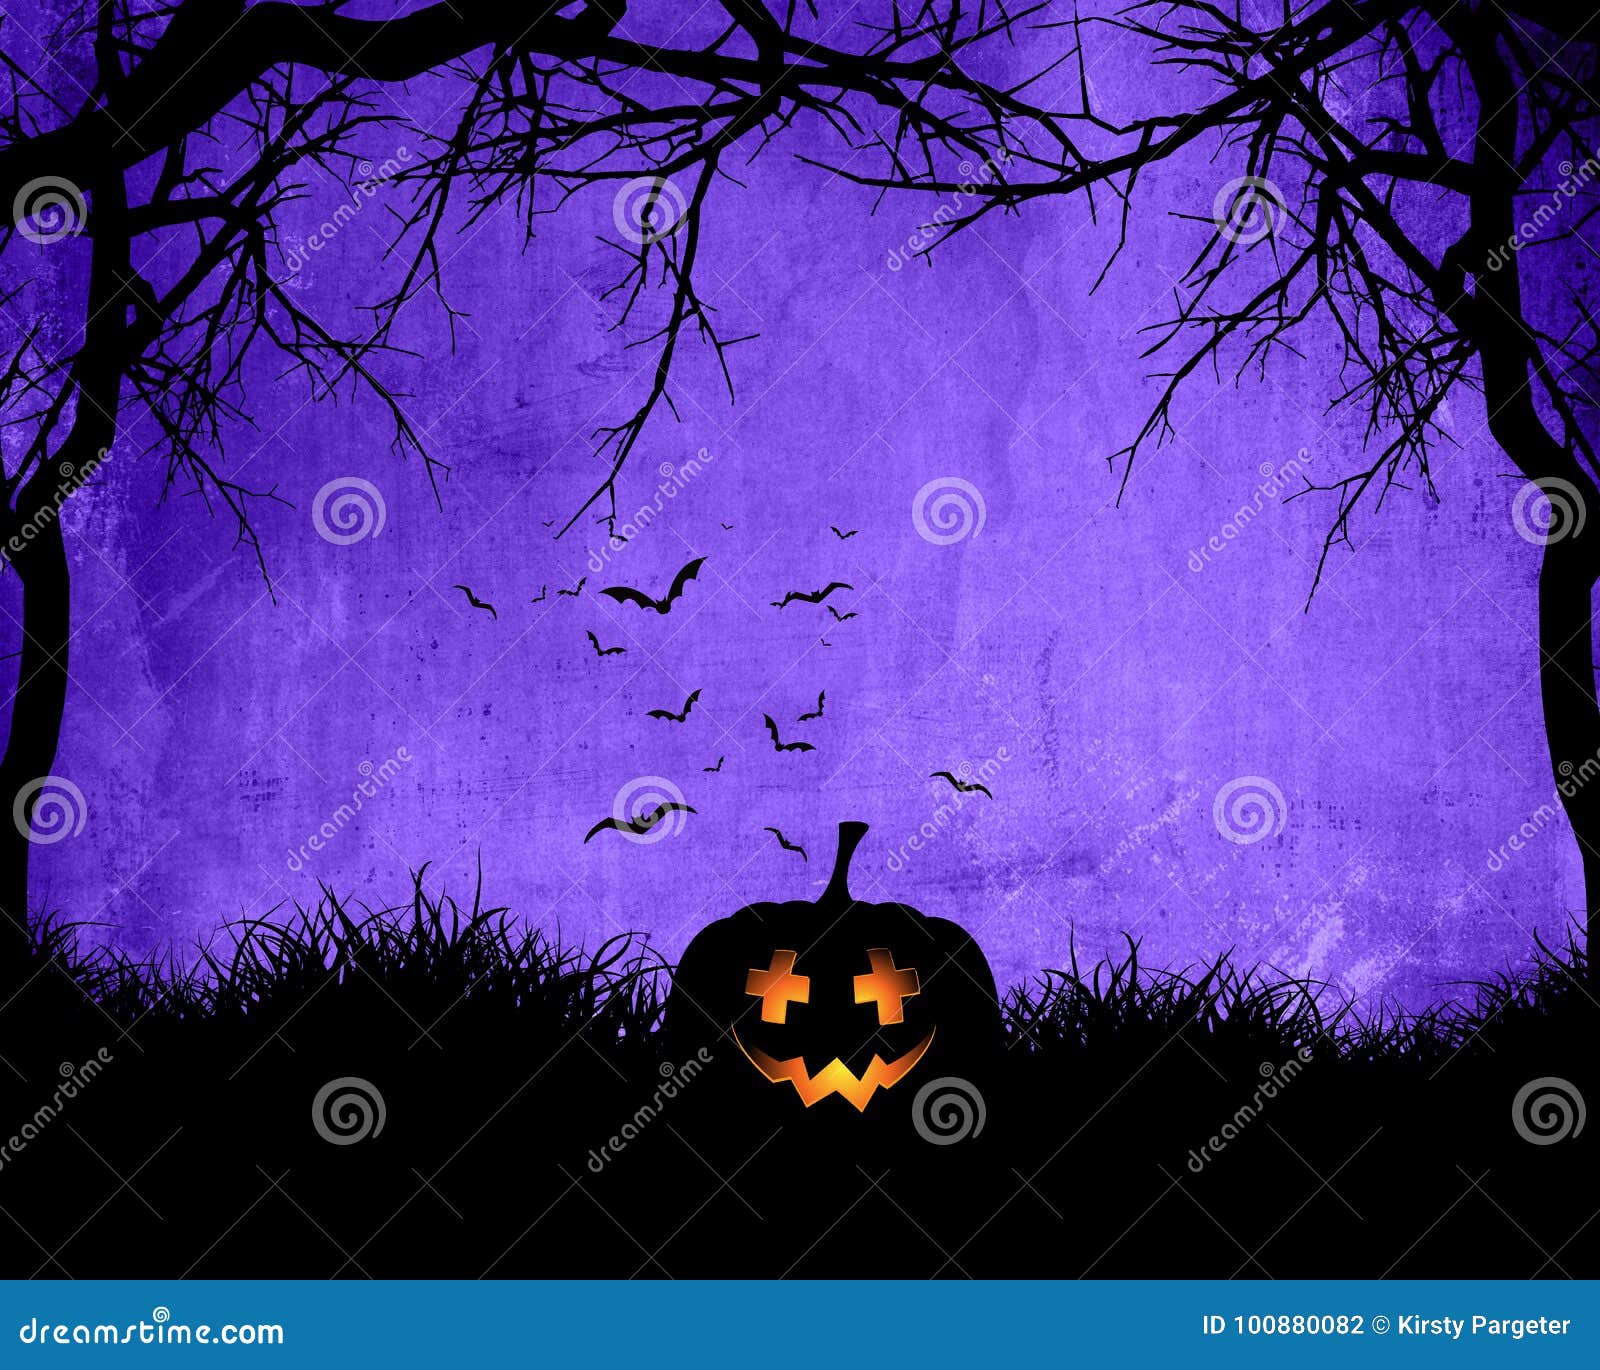 Sự xuất hiện của quả bí ngô sẽ khiến bạn nhớ đến Halloween. Hãy xem hình ảnh liên quan đến từ khóa \